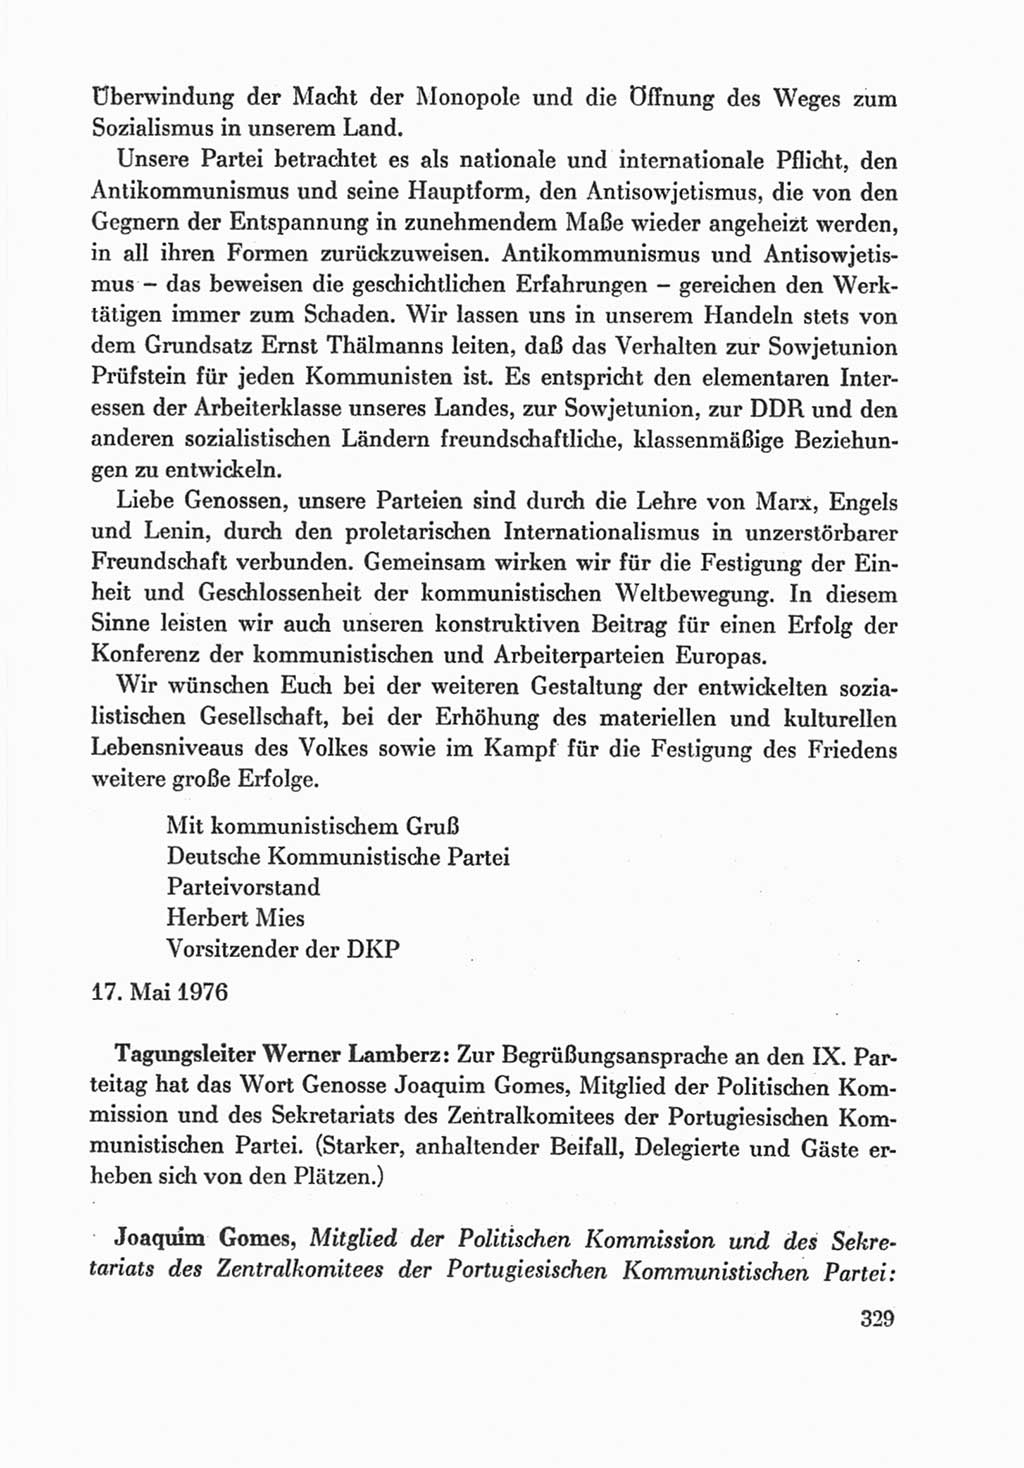 Protokoll der Verhandlungen des Ⅸ. Parteitages der Sozialistischen Einheitspartei Deutschlands (SED) [Deutsche Demokratische Republik (DDR)] 1976, Band 1, Seite 329 (Prot. Verh. Ⅸ. PT SED DDR 1976, Bd. 1, S. 329)